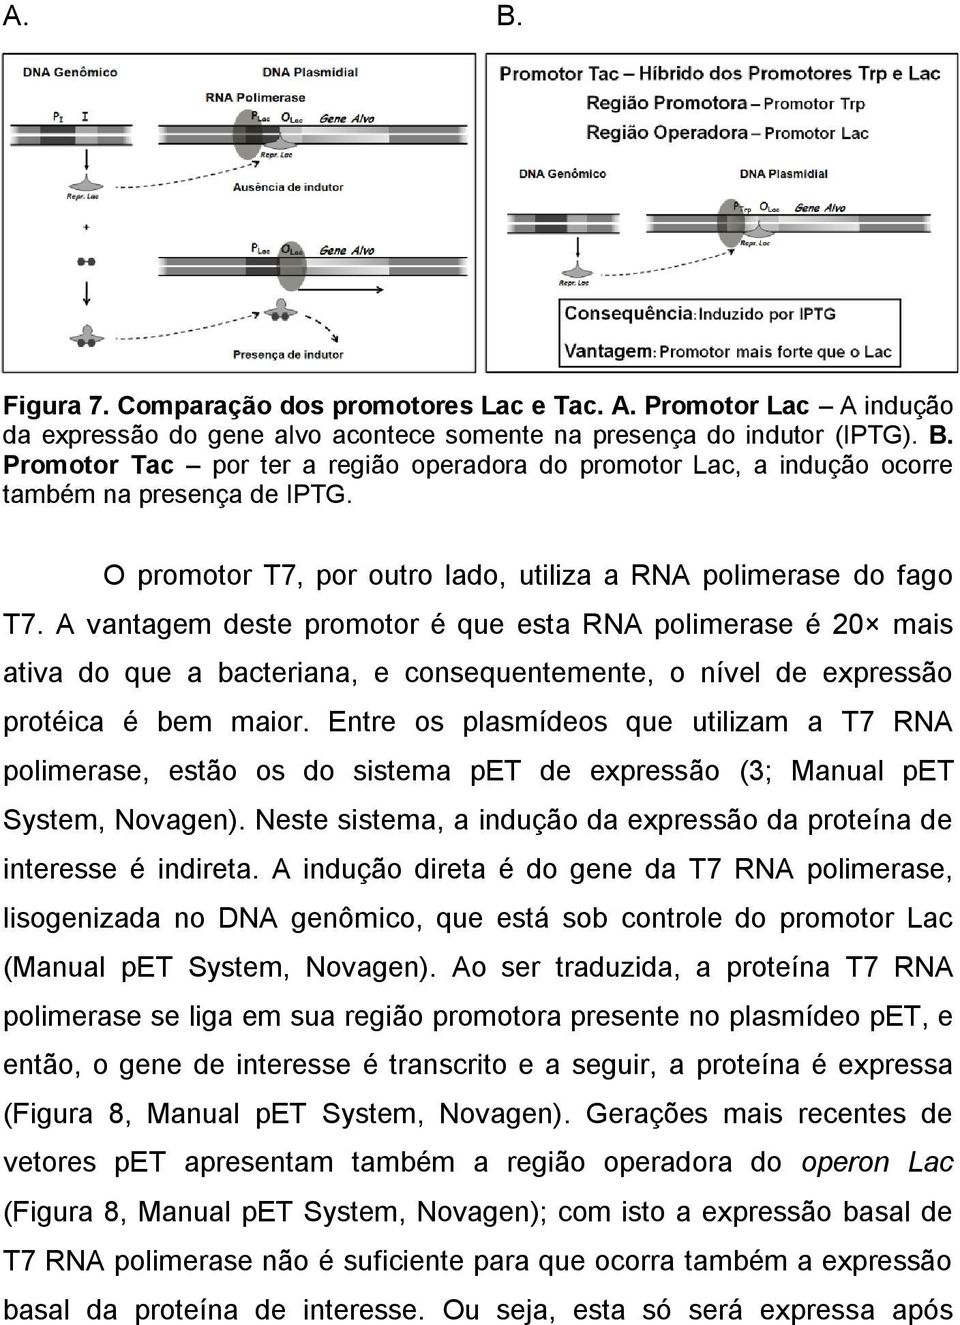 A vantagem deste promotor é que esta RNA polimerase é 20 mais ativa do que a bacteriana, e consequentemente, o nível de expressão protéica é bem maior.